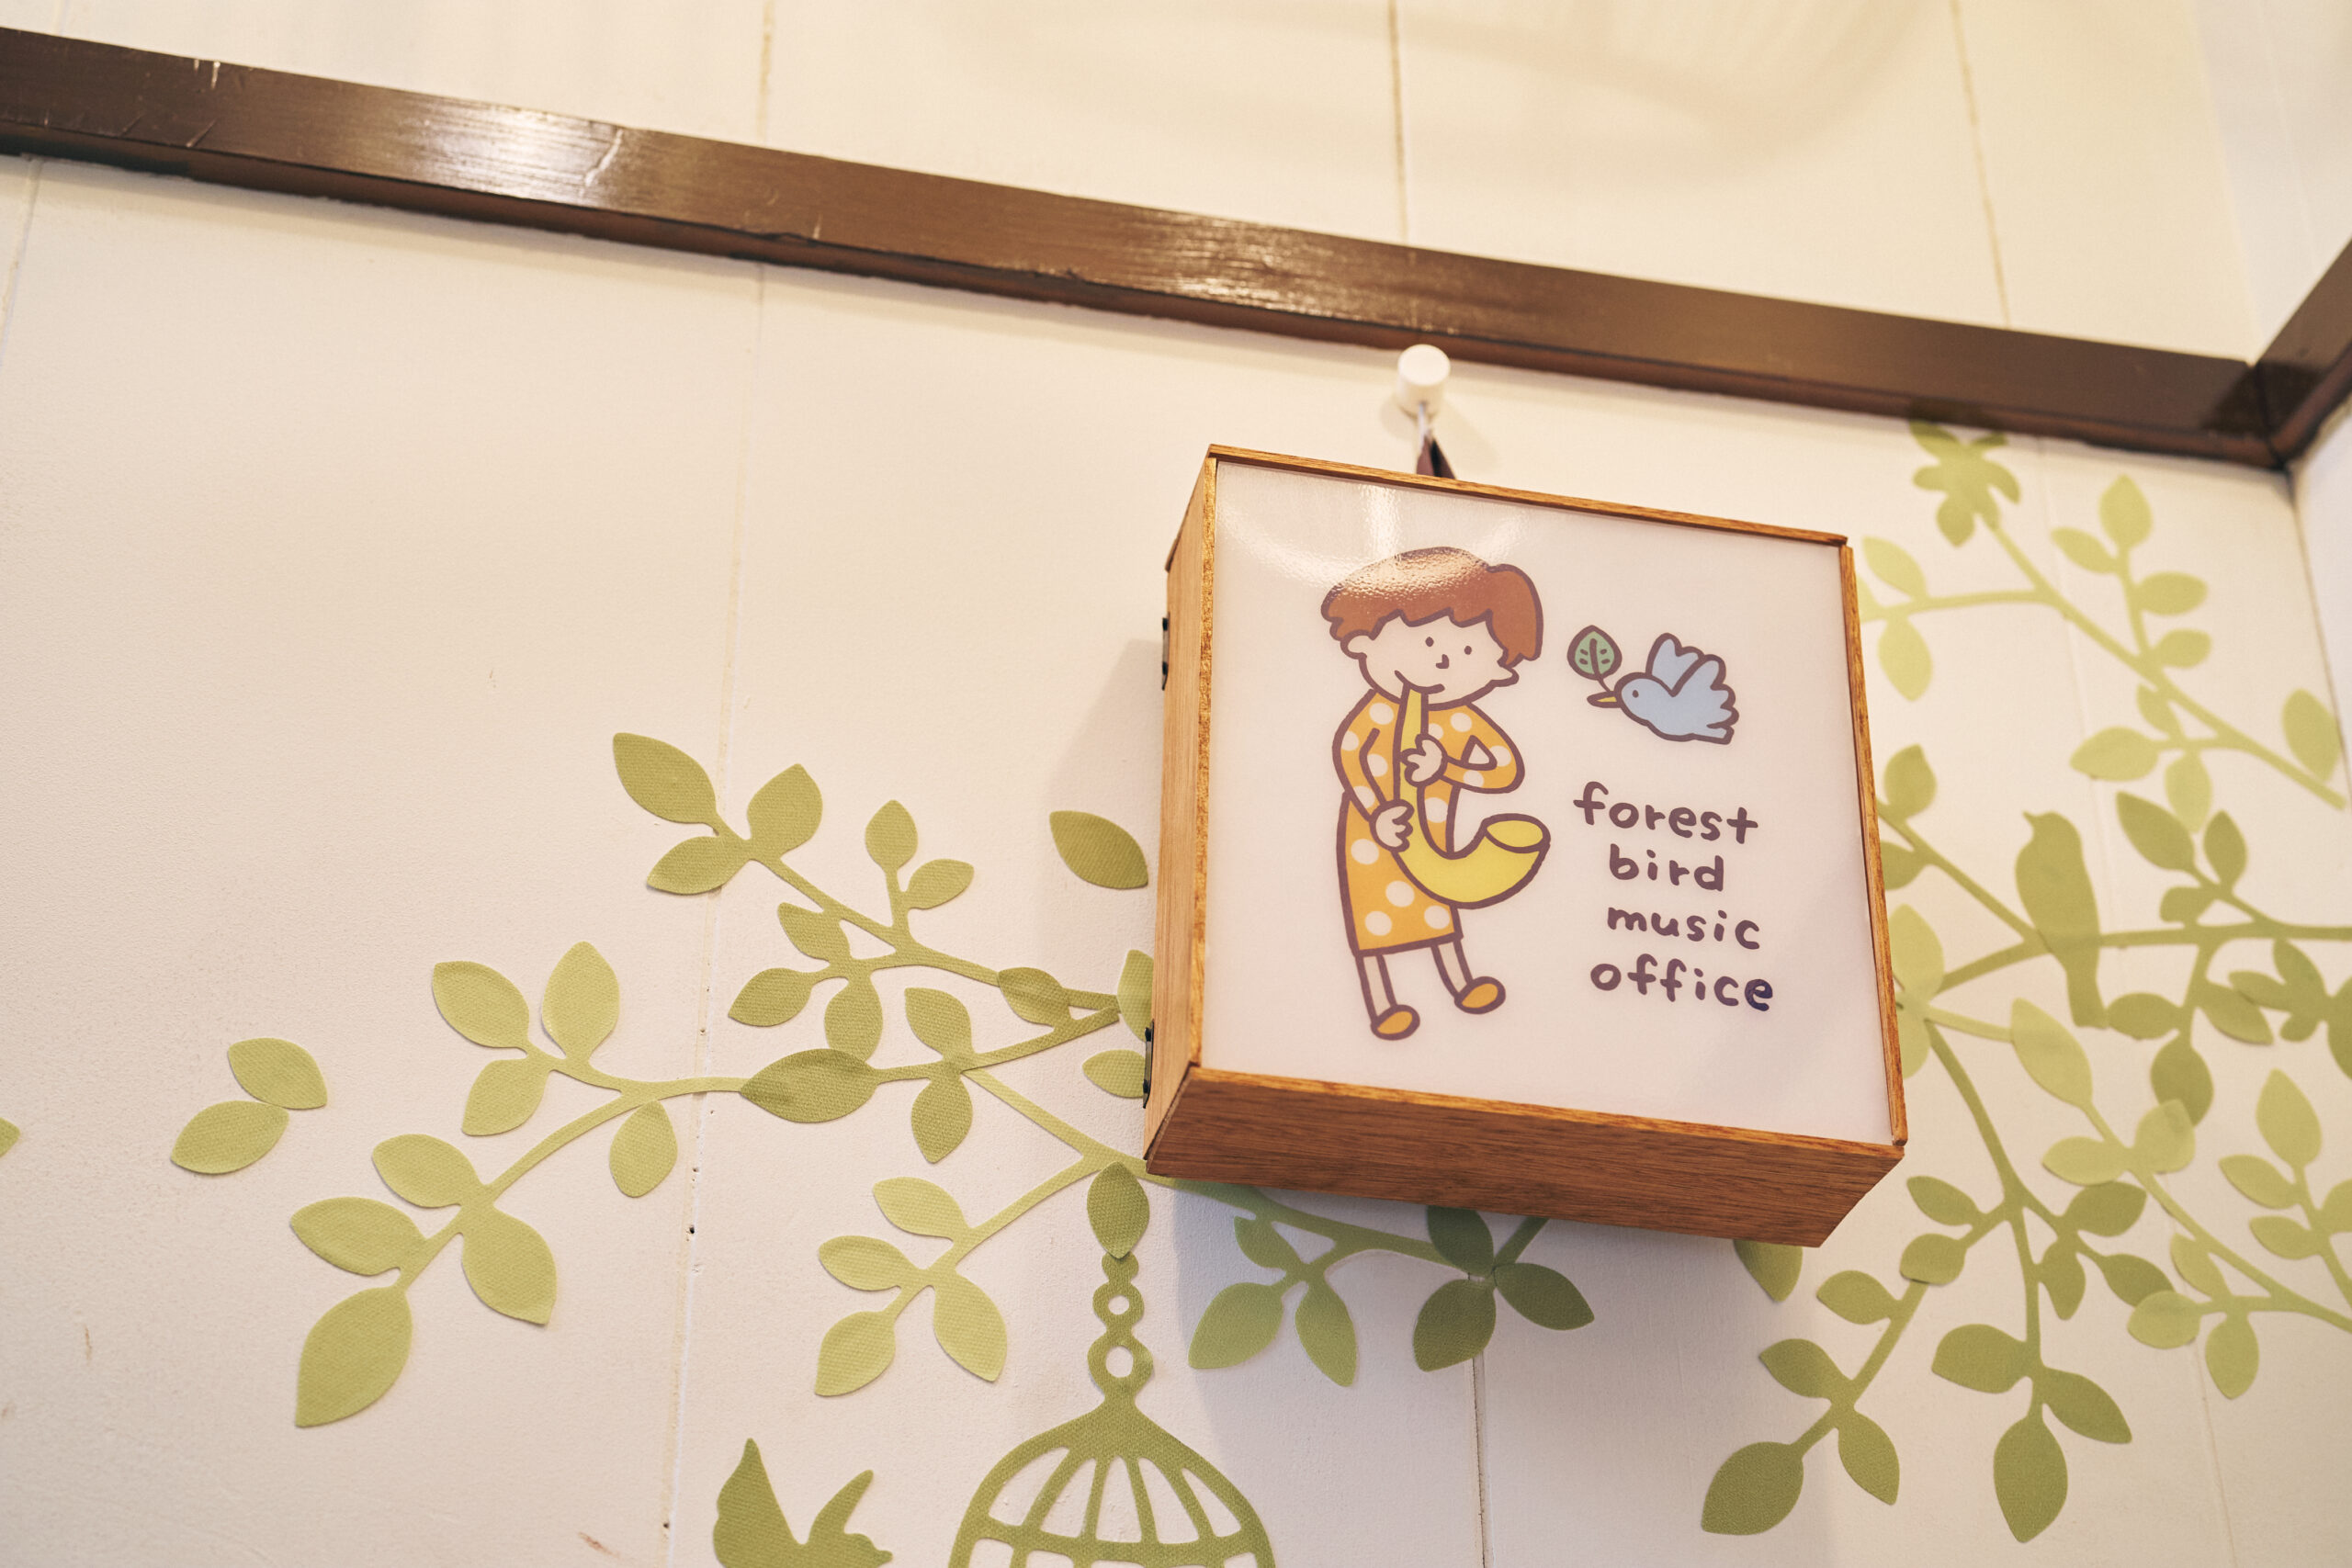 名雪さんのオフィスロゴは、仙台市在住のイラストレーター・佐藤ジュンコさんによるもの。温かい雰囲気が名雪さんの人柄をよく表している。